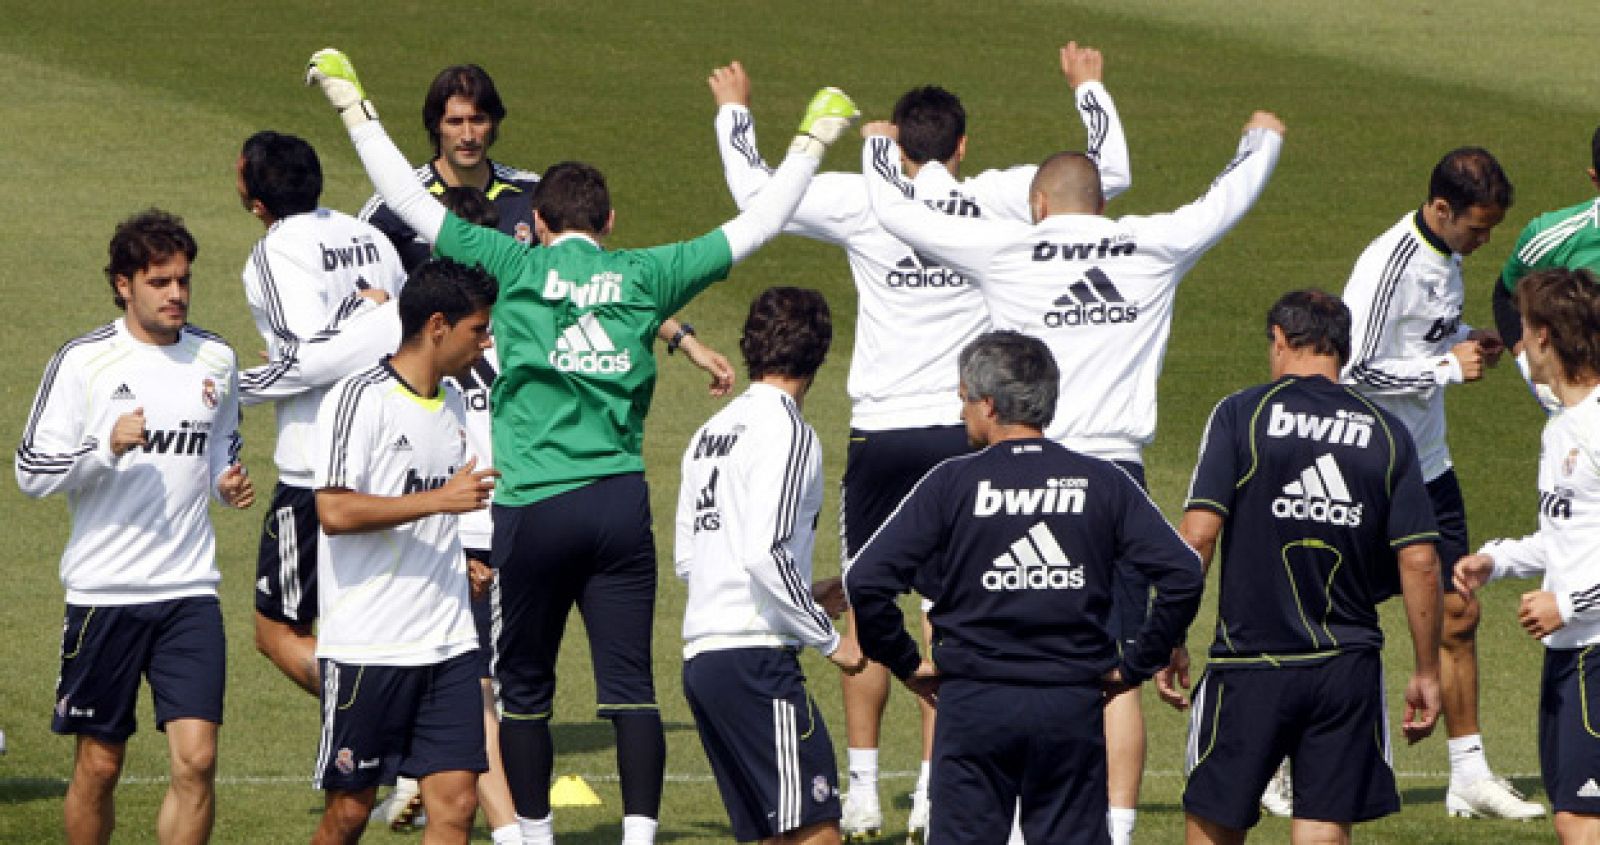 El entrenador del Real Madrid, el portugués José Mourinho, observa a sus jugadores durante un entrenamiento.